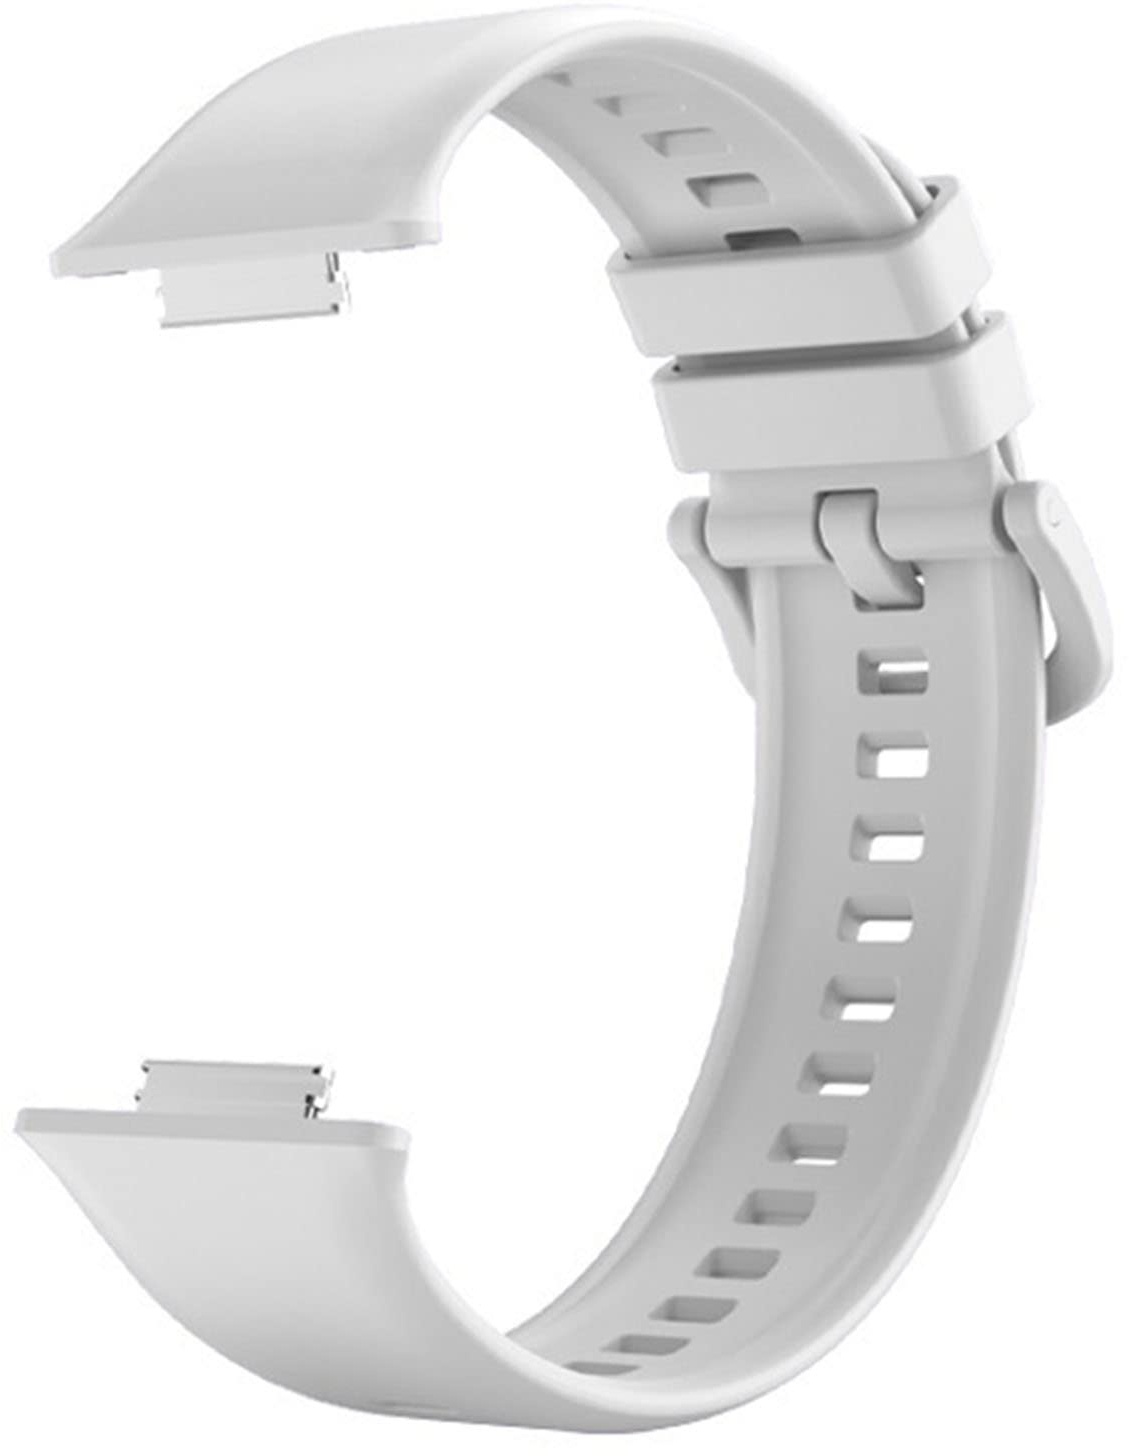 Band Kompatibel mit Huawei Watch Fit 2, Ersatz-Silikon-Smartwatch-Armband, Verstellbares Uhrenarmband für Watch Fit 2, Leicht zu Reinigen (Weiß)